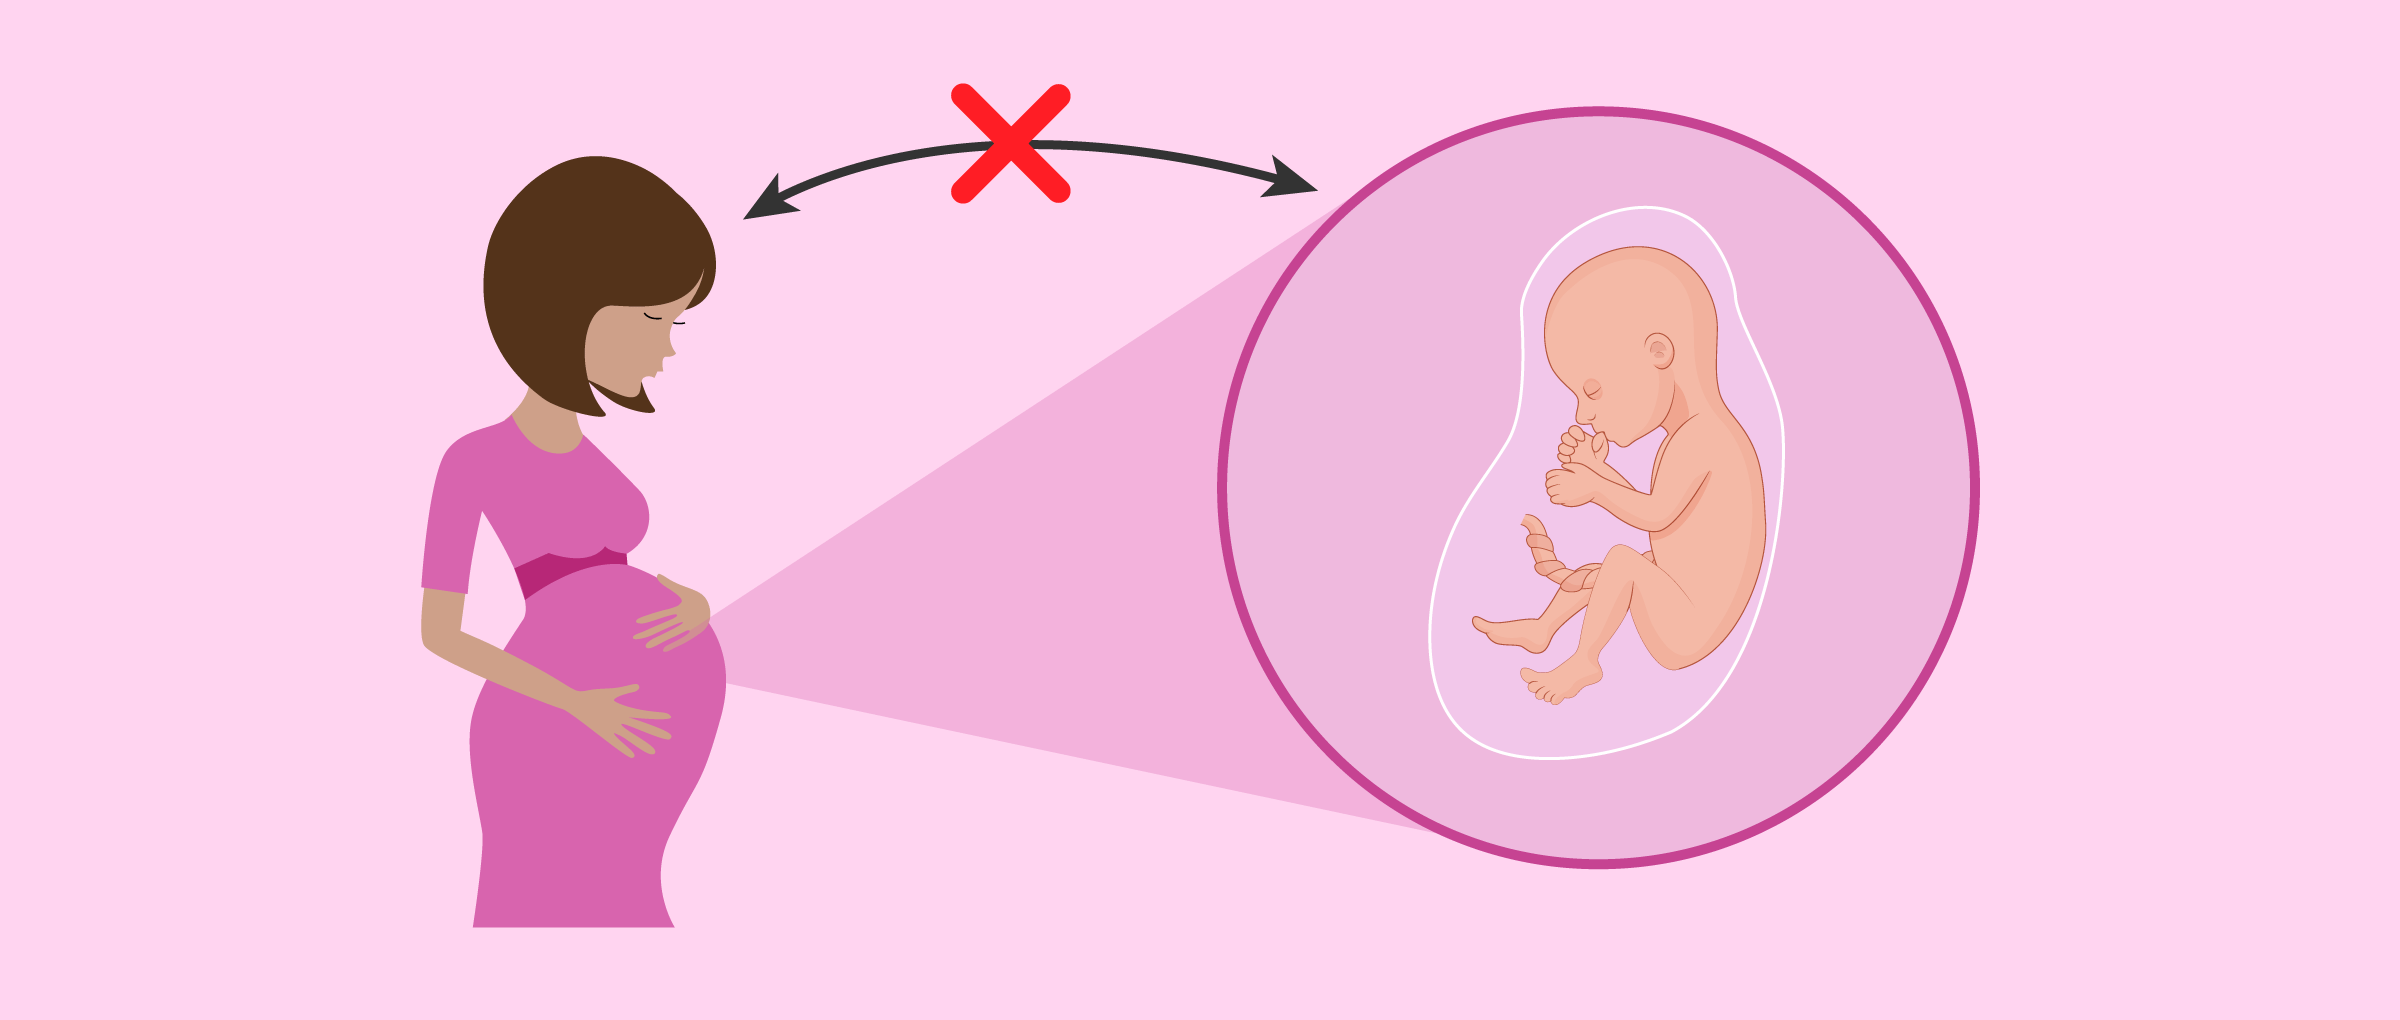 Emotionales Verhältnis zwischen Leihmutter und Baby verringern